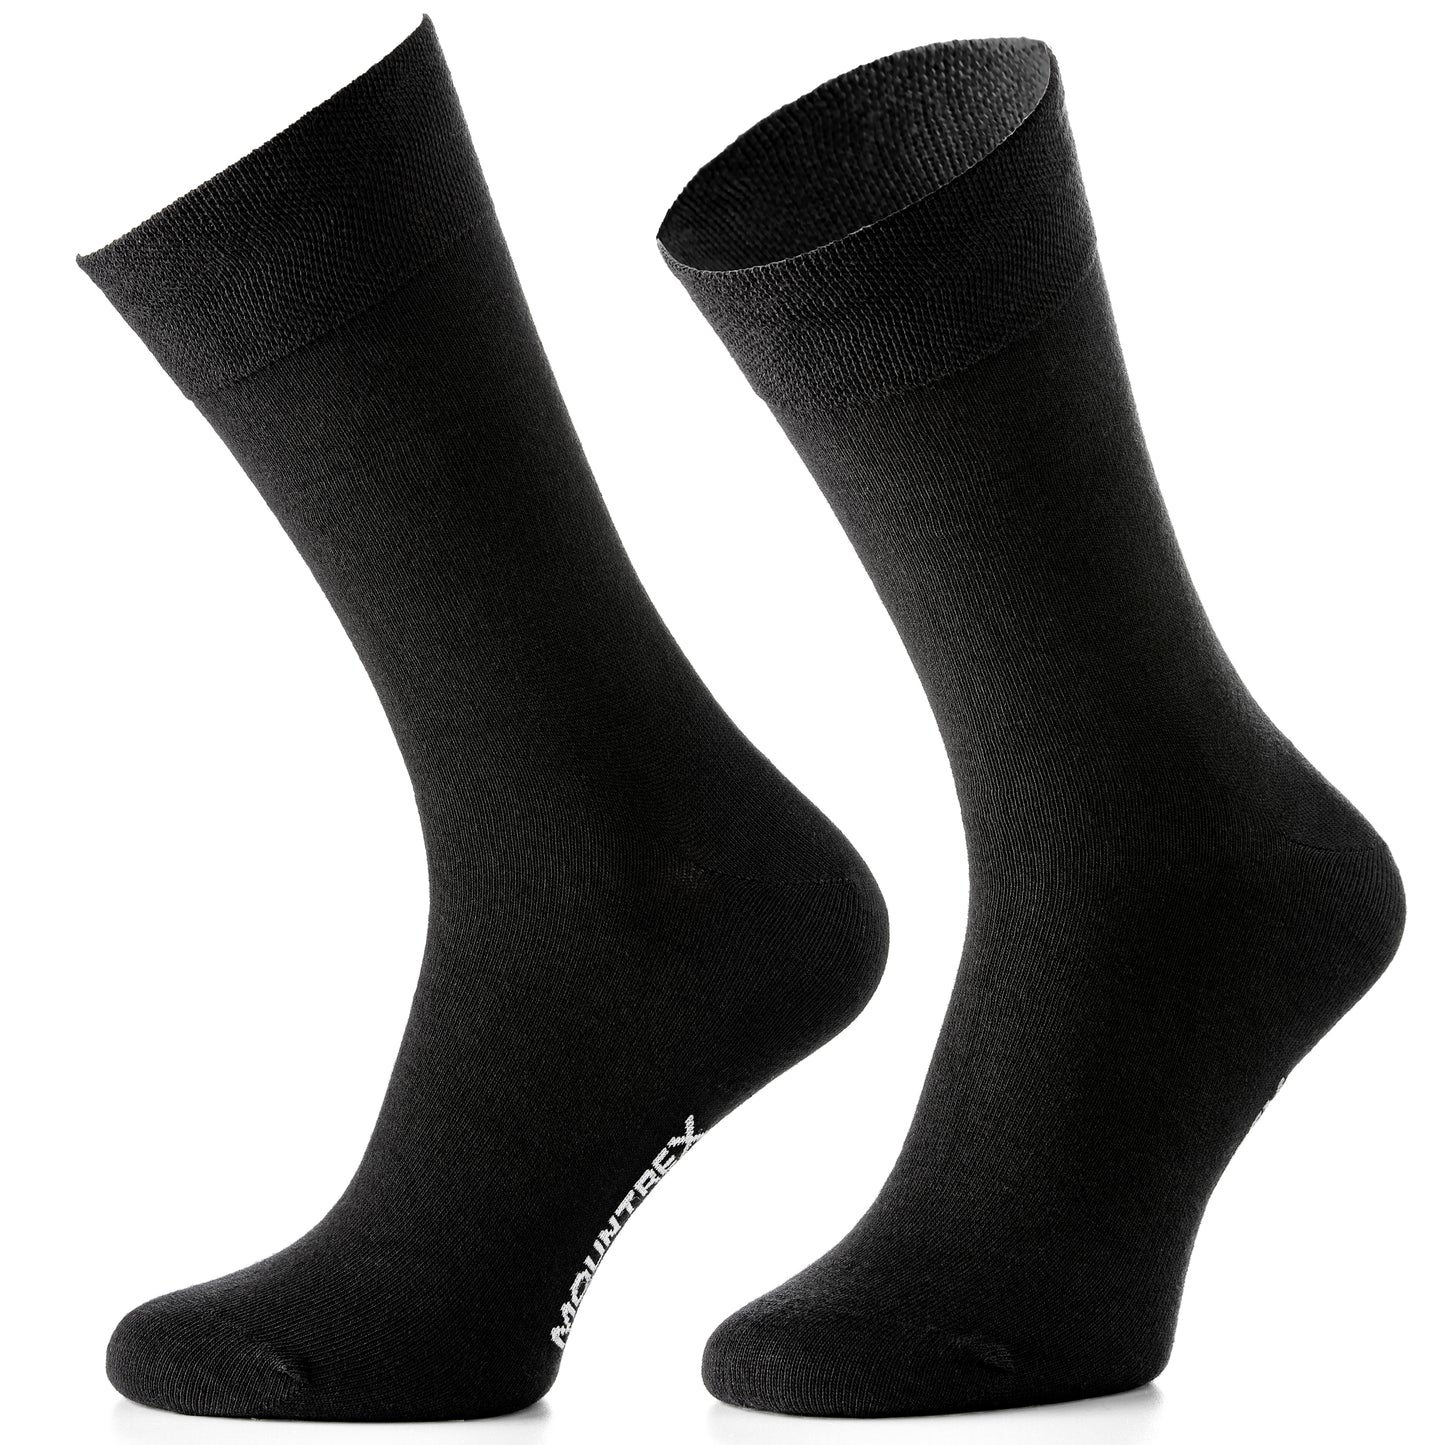 Business Socken Herren Damen (10 Paar) - 4 x Schwarz, 3 x Anthrazit, 3 x Braun